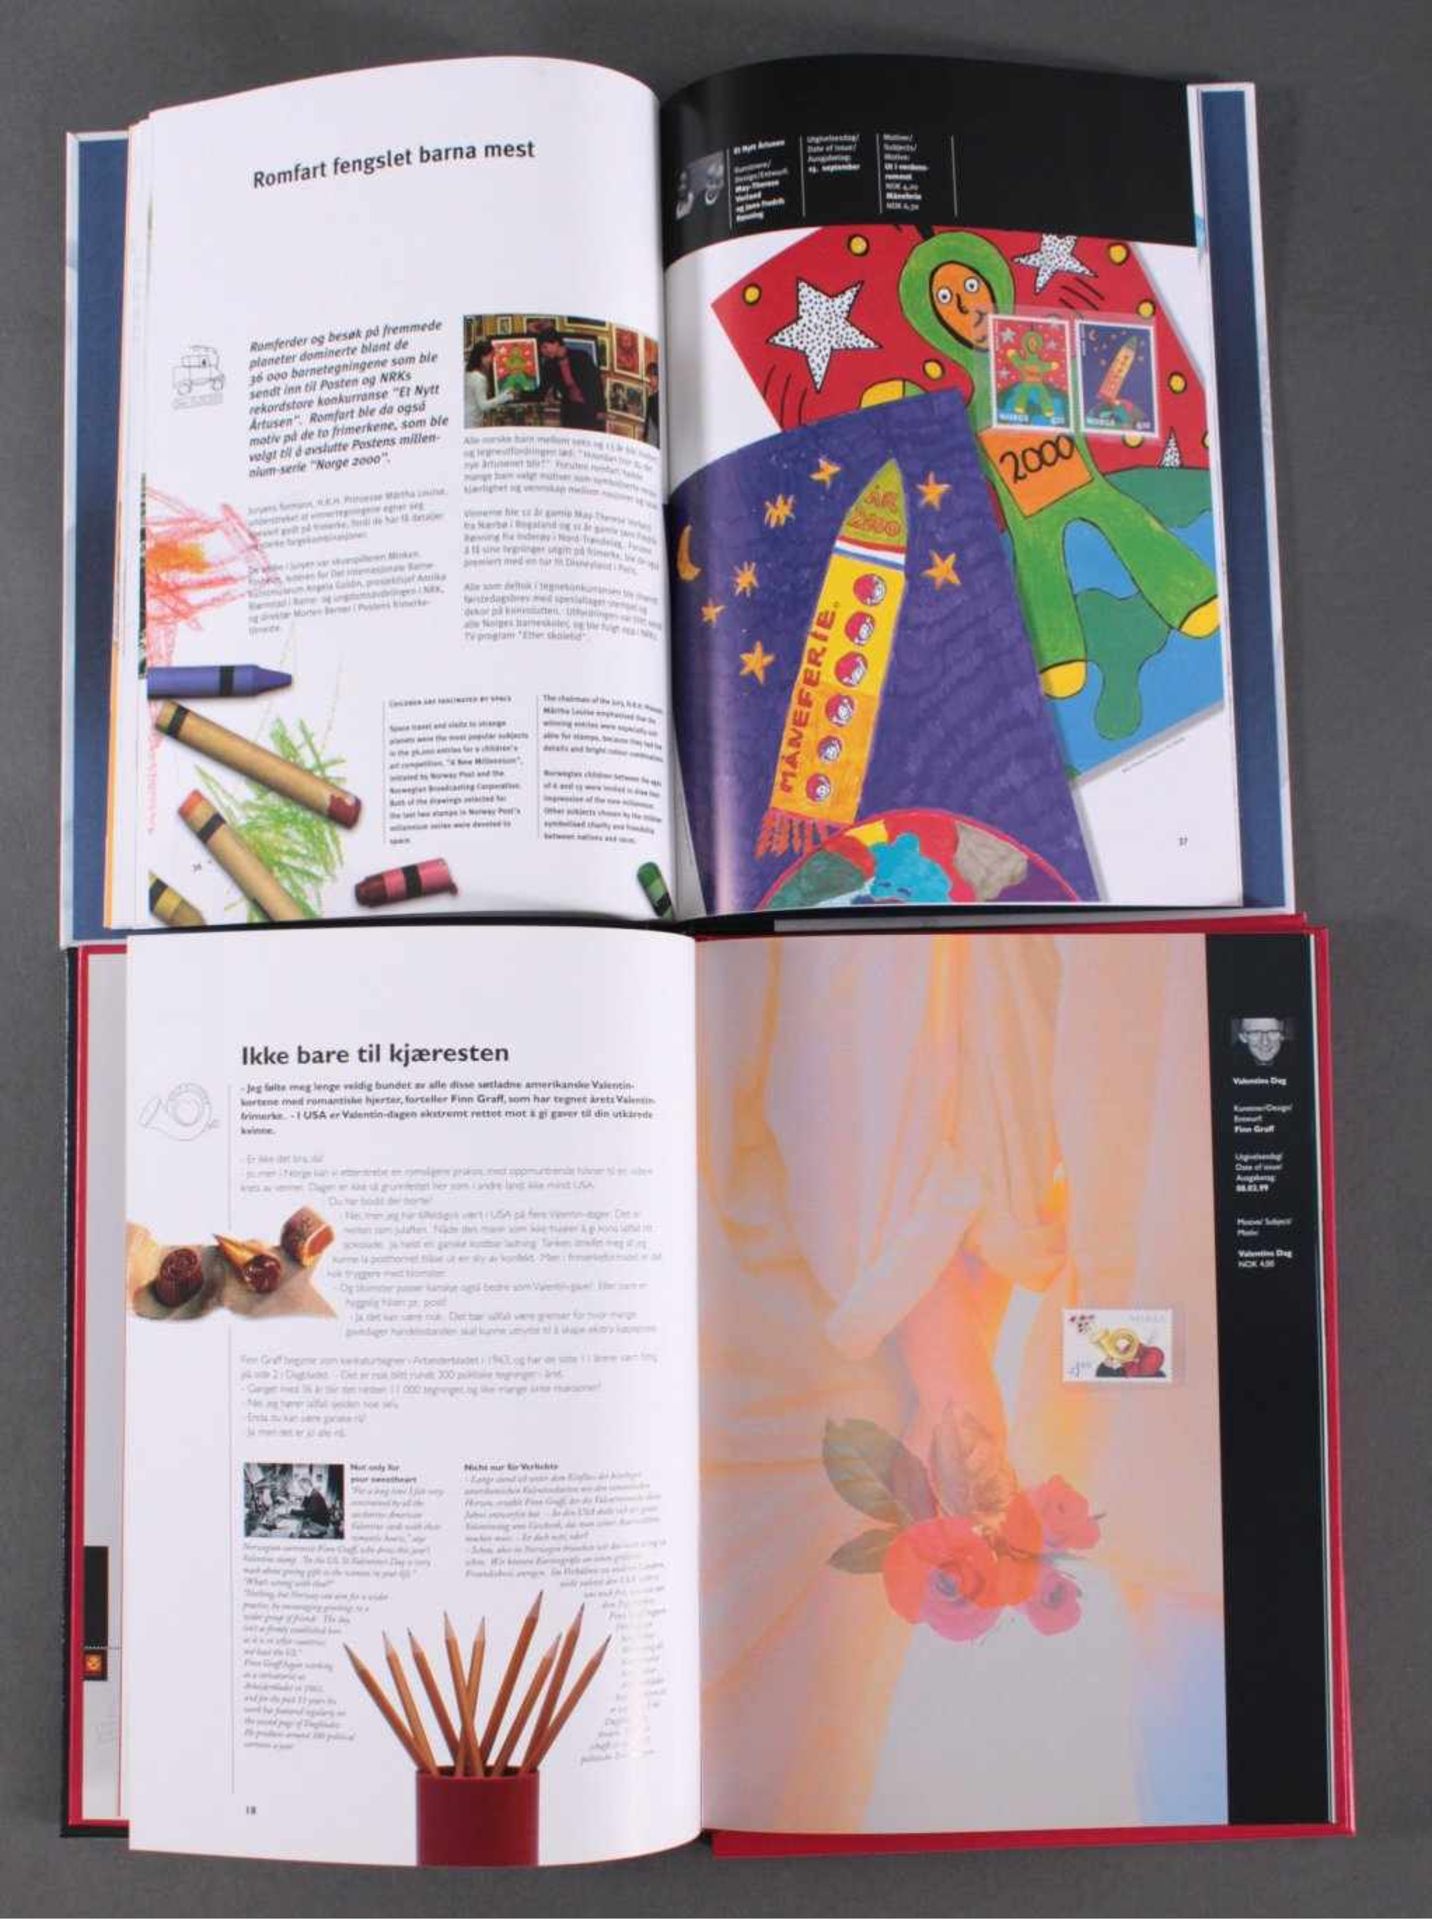 NORWEGEN 1999 und 2000, postfrische Jahrbücher1999 und 2000, je postfrisches Jahrbuch mit - Bild 2 aus 2